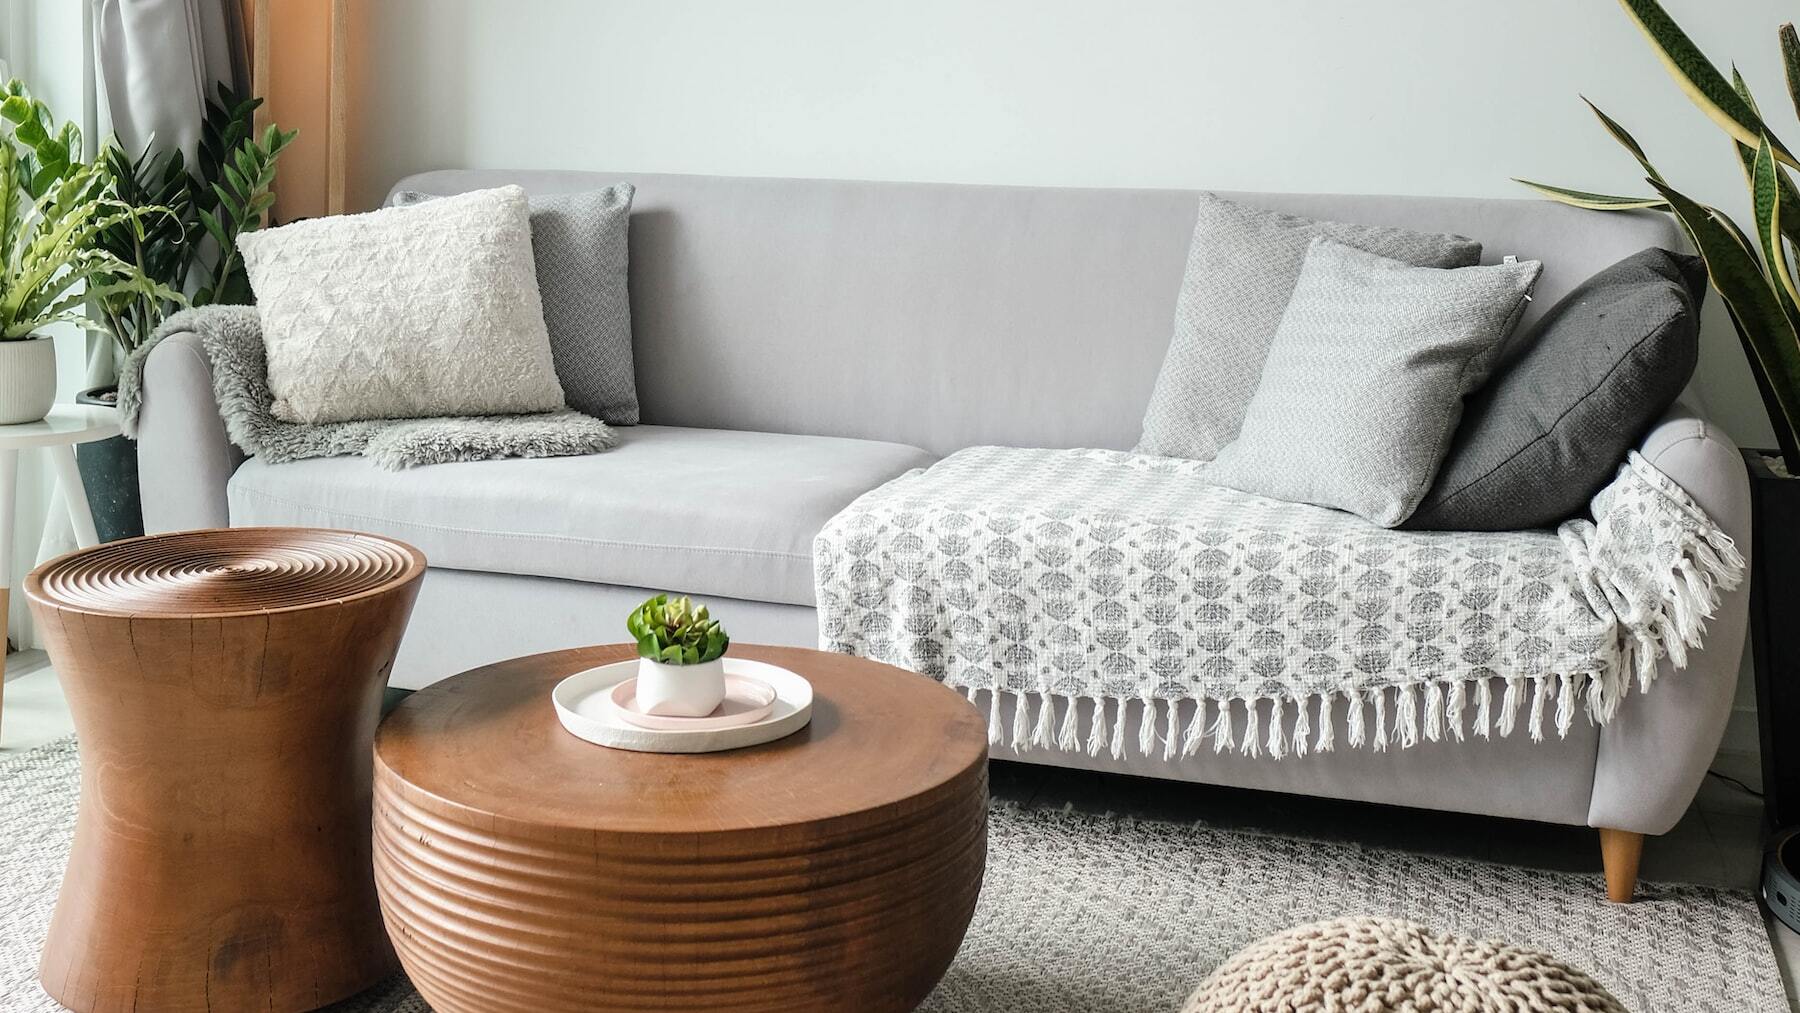 Tres trucos para limpiar bien el sofá: quedará como nuevo - Cadena